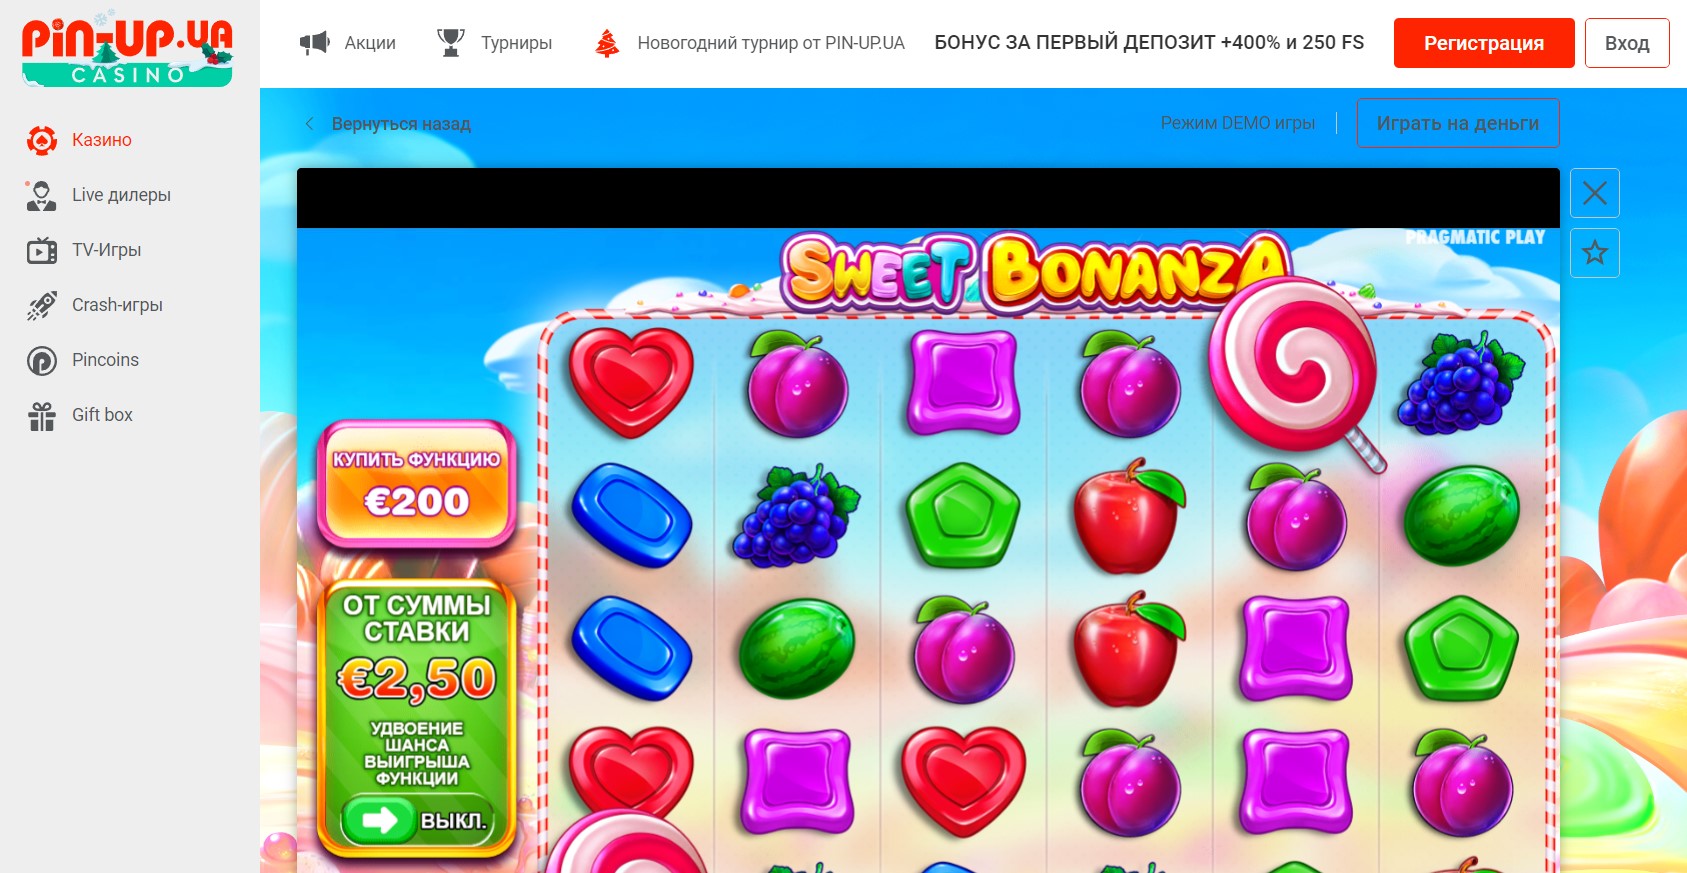 Sweet Bonanza - грати безкоштовно в онлайн казино Пін Ап